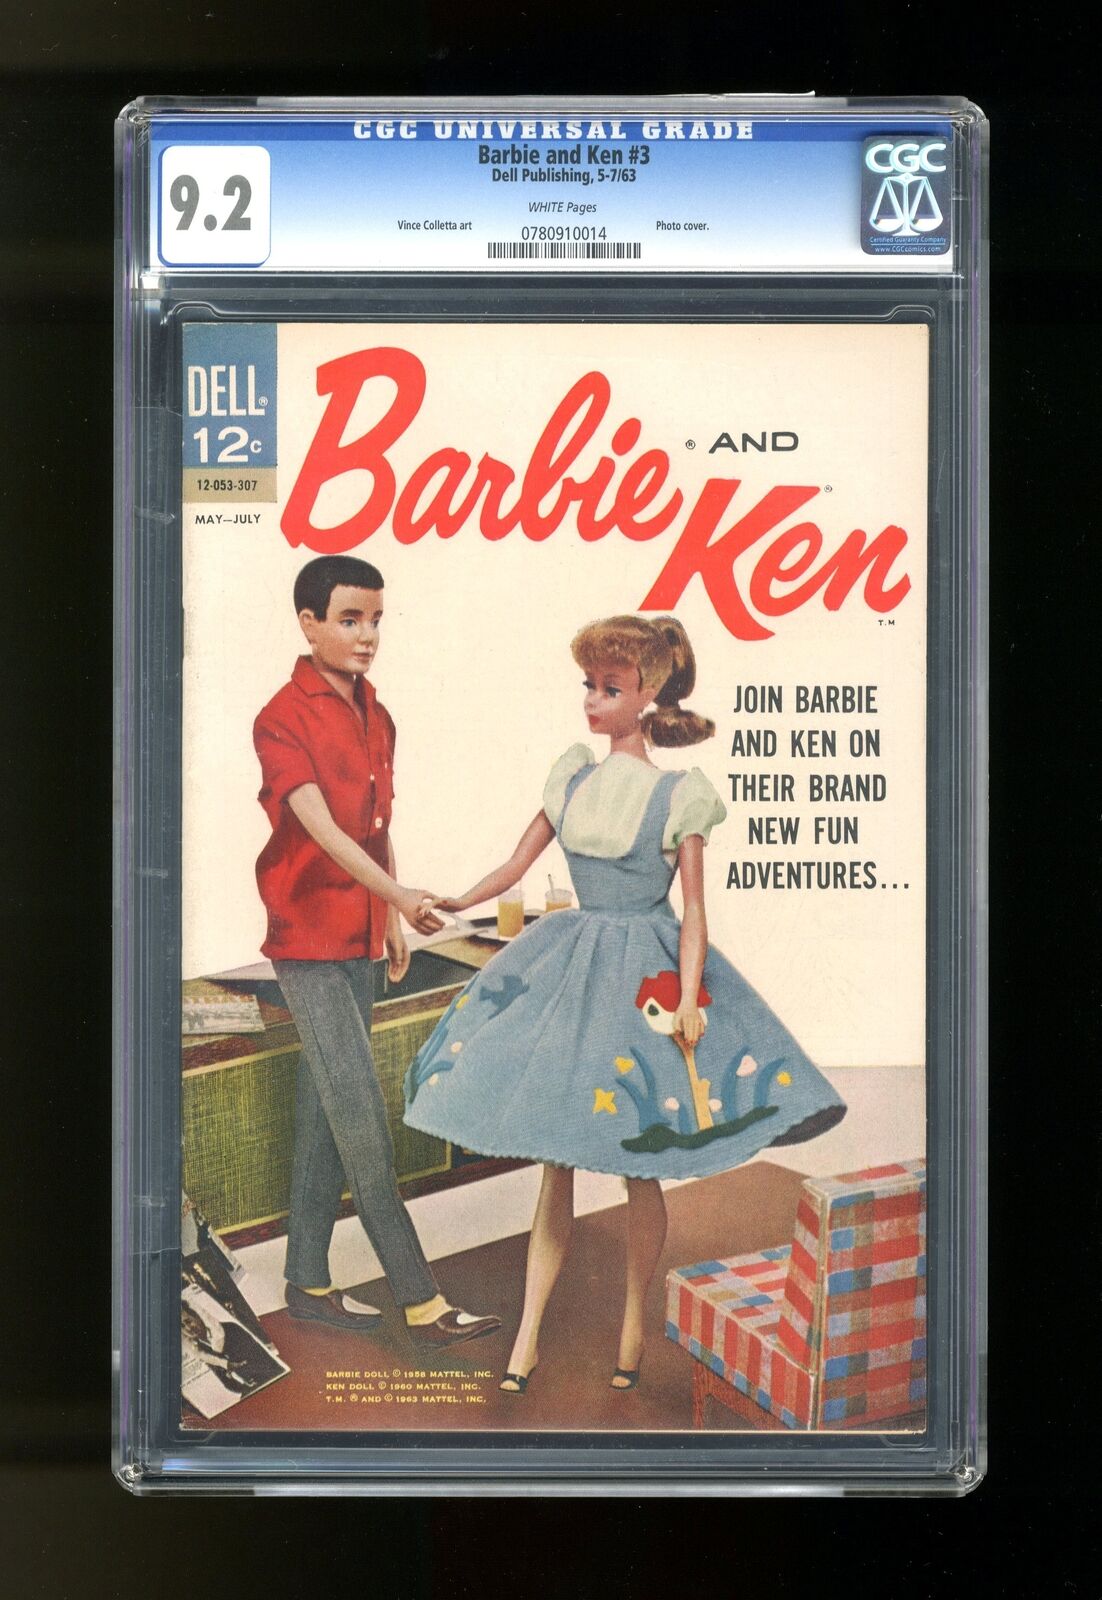 Barbie and Ken #3 CGC 9.2 1963 0780910014